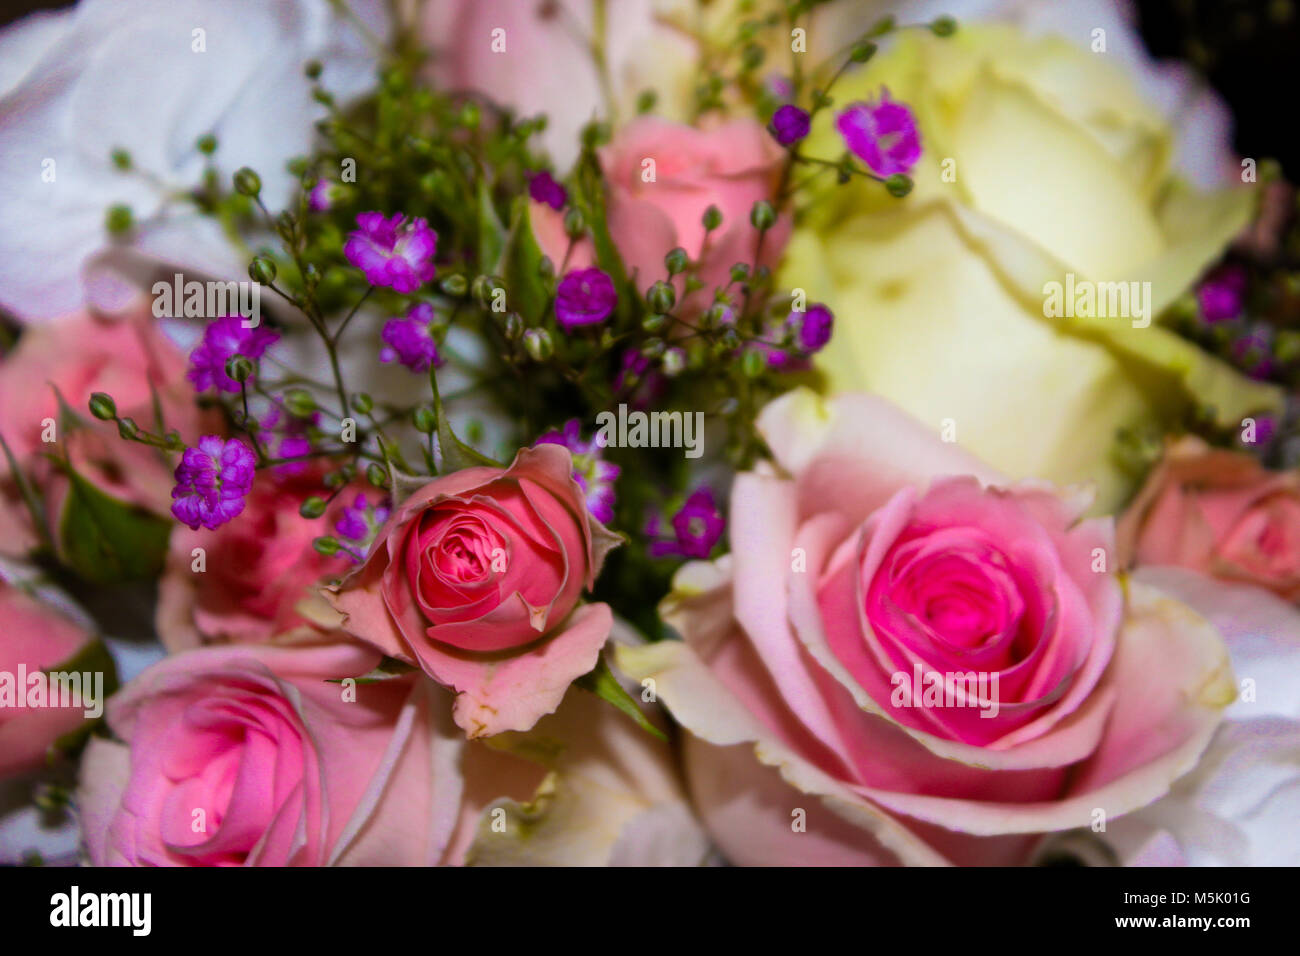 Wunderschöne Rosen, weissen Veilchen und Lila gypsophila Blumenstrauß  Stockfotografie - Alamy